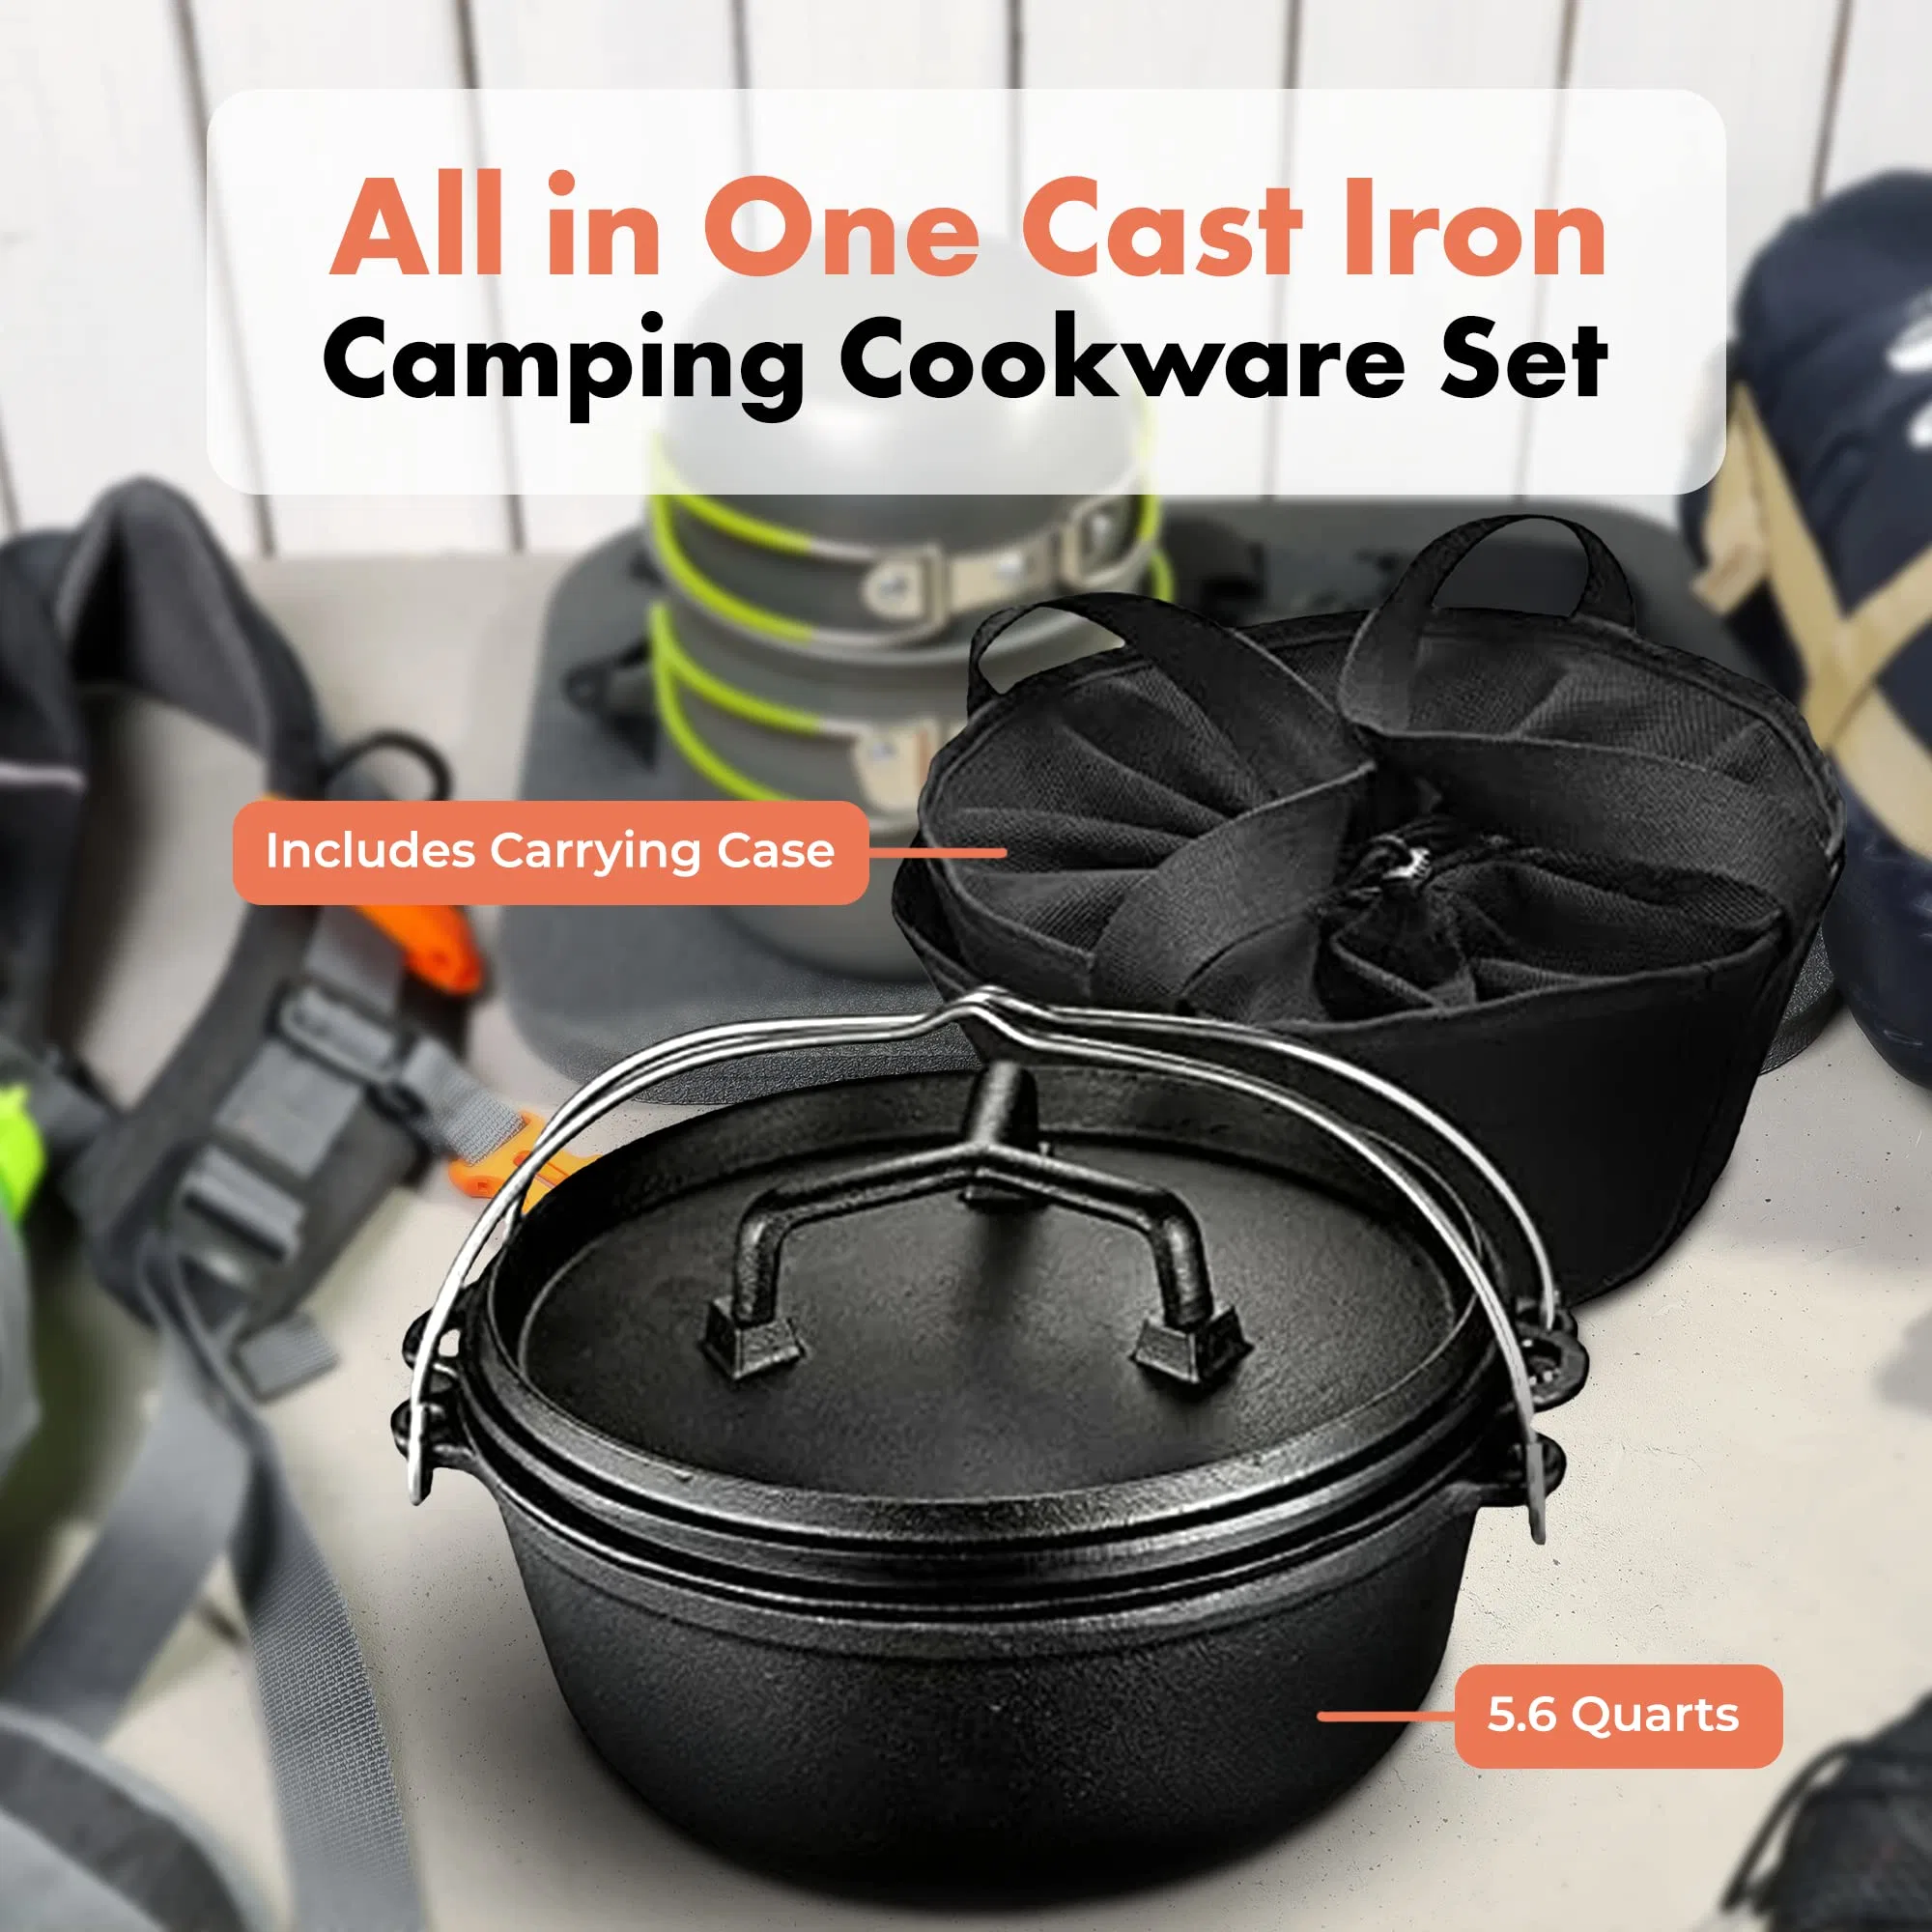 Nuevo diseño Horno de Hierro tapas al aire libre Cocina Skillet Grill Camping Juegos de utensilios de cocina